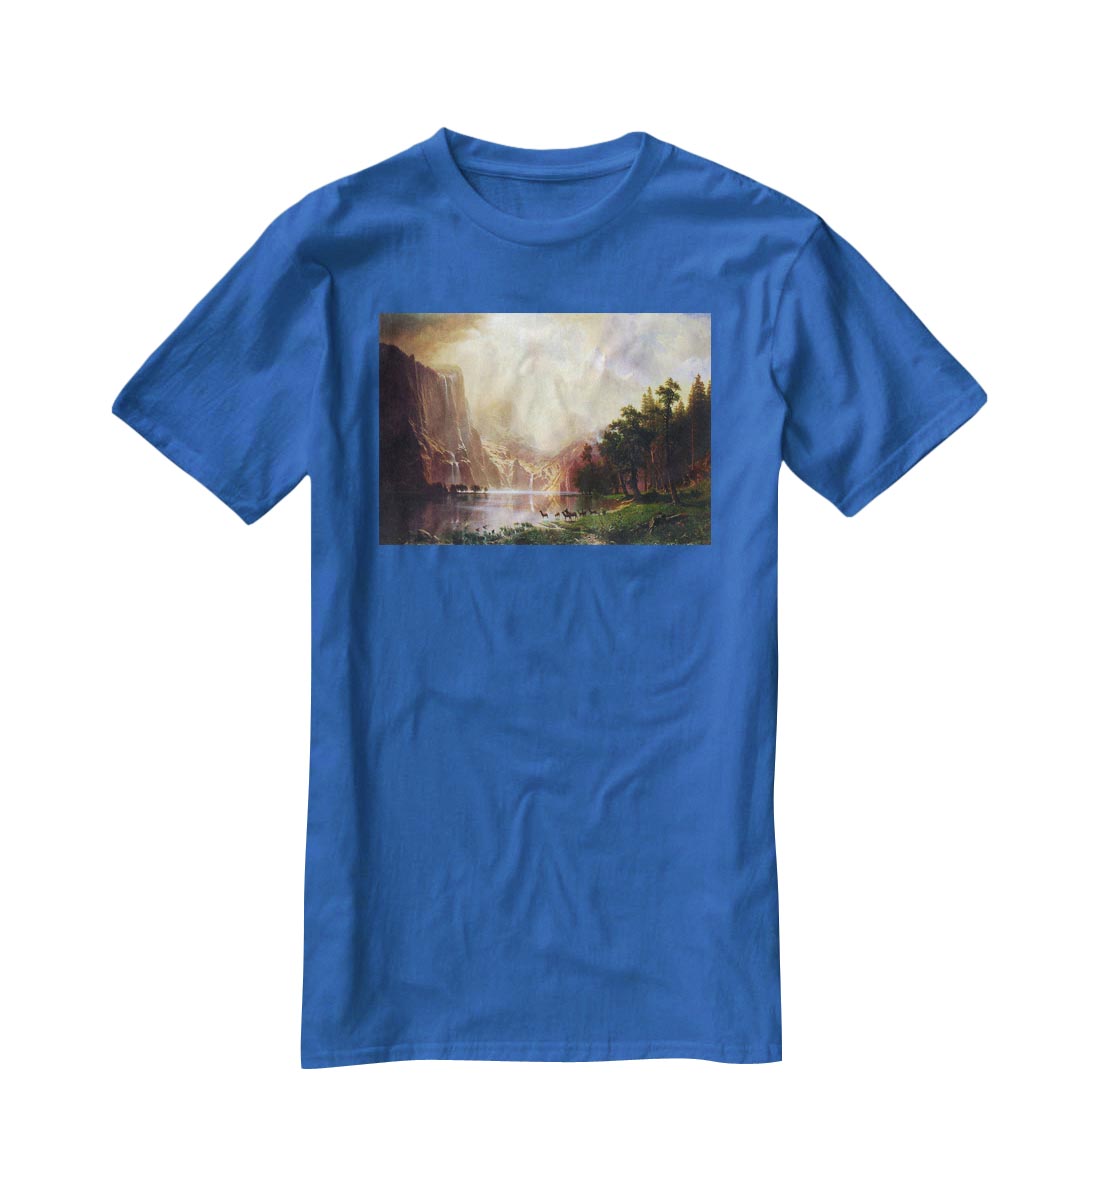 Between the Sierra Nevada Mountains by Bierstadt T-Shirt - Canvas Art Rocks - 2